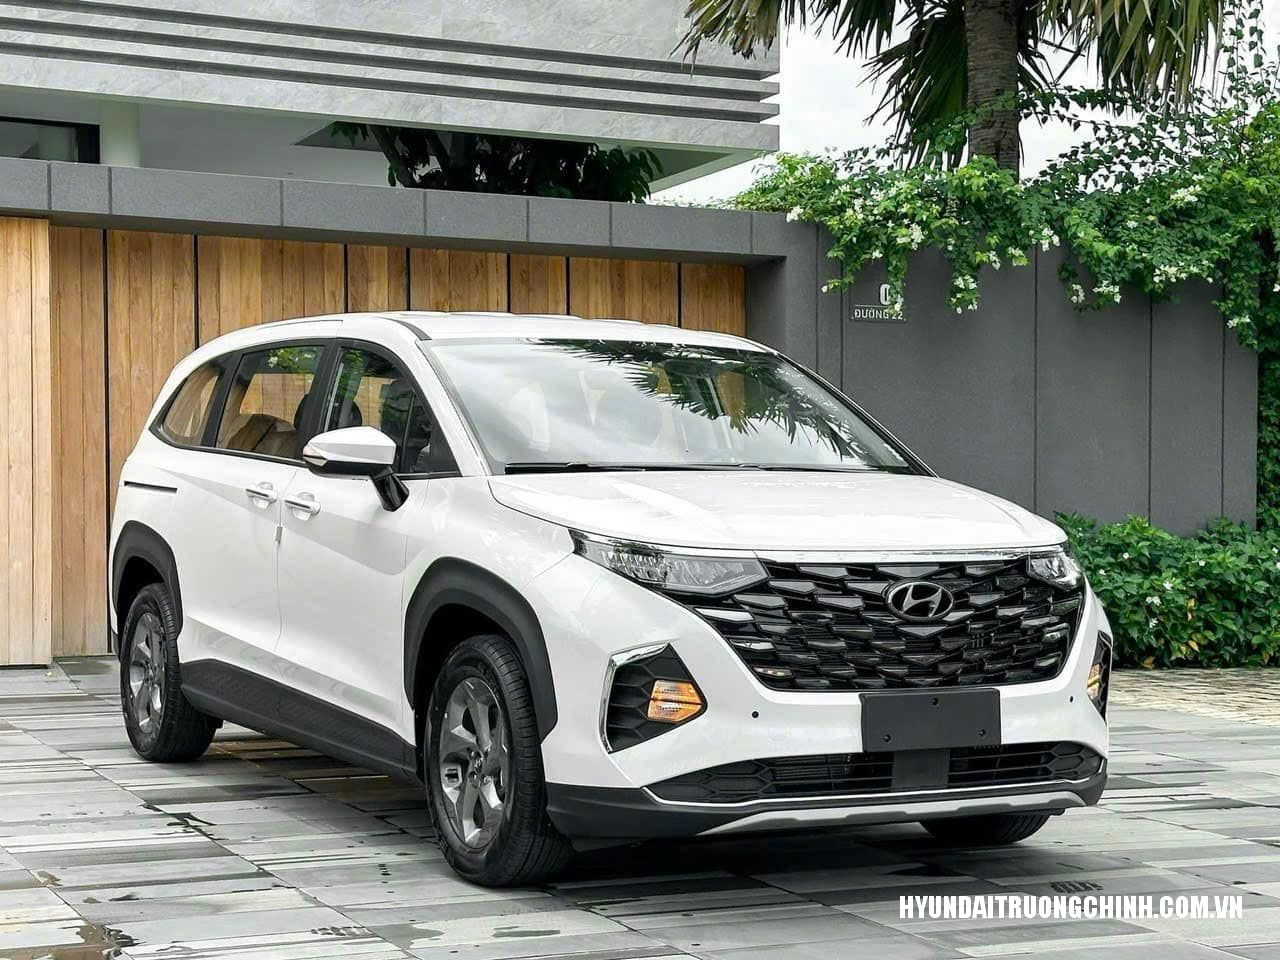 Hyundai Custin Phiên Bản Tiêu Chuẩn - Giá Niêm Yết Chỉ 850tr Tại Việt Nam